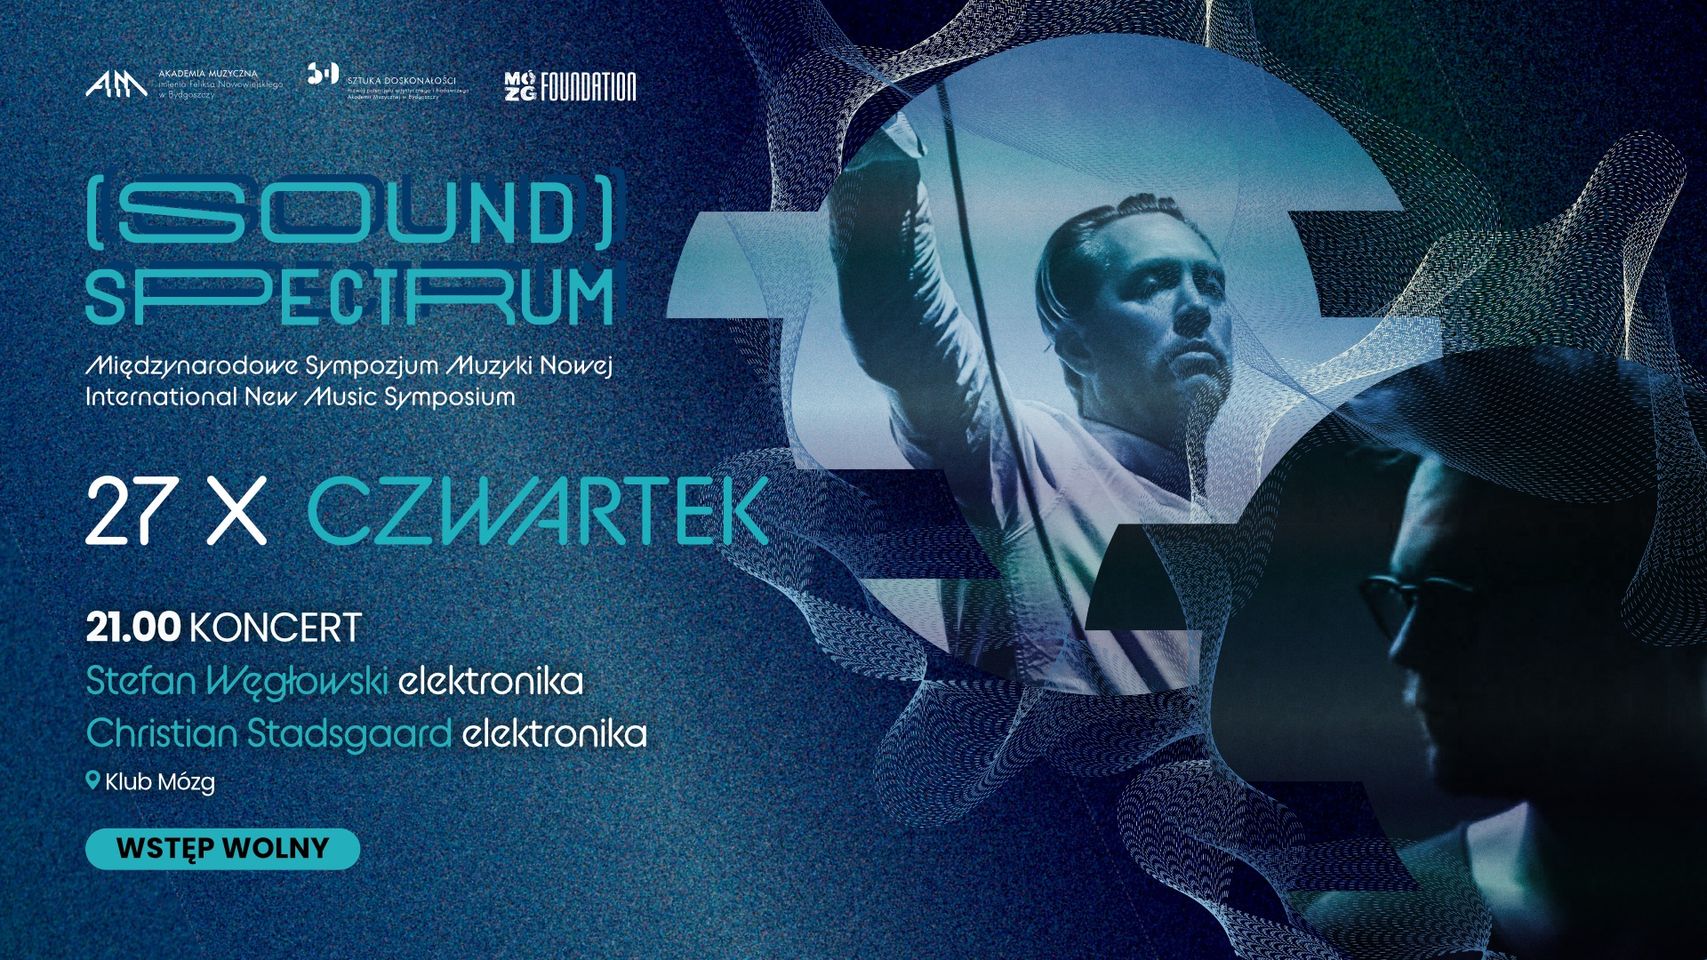 SOUND SPECTRUM: Stefan Węgłowski, Christian Stadsgaard